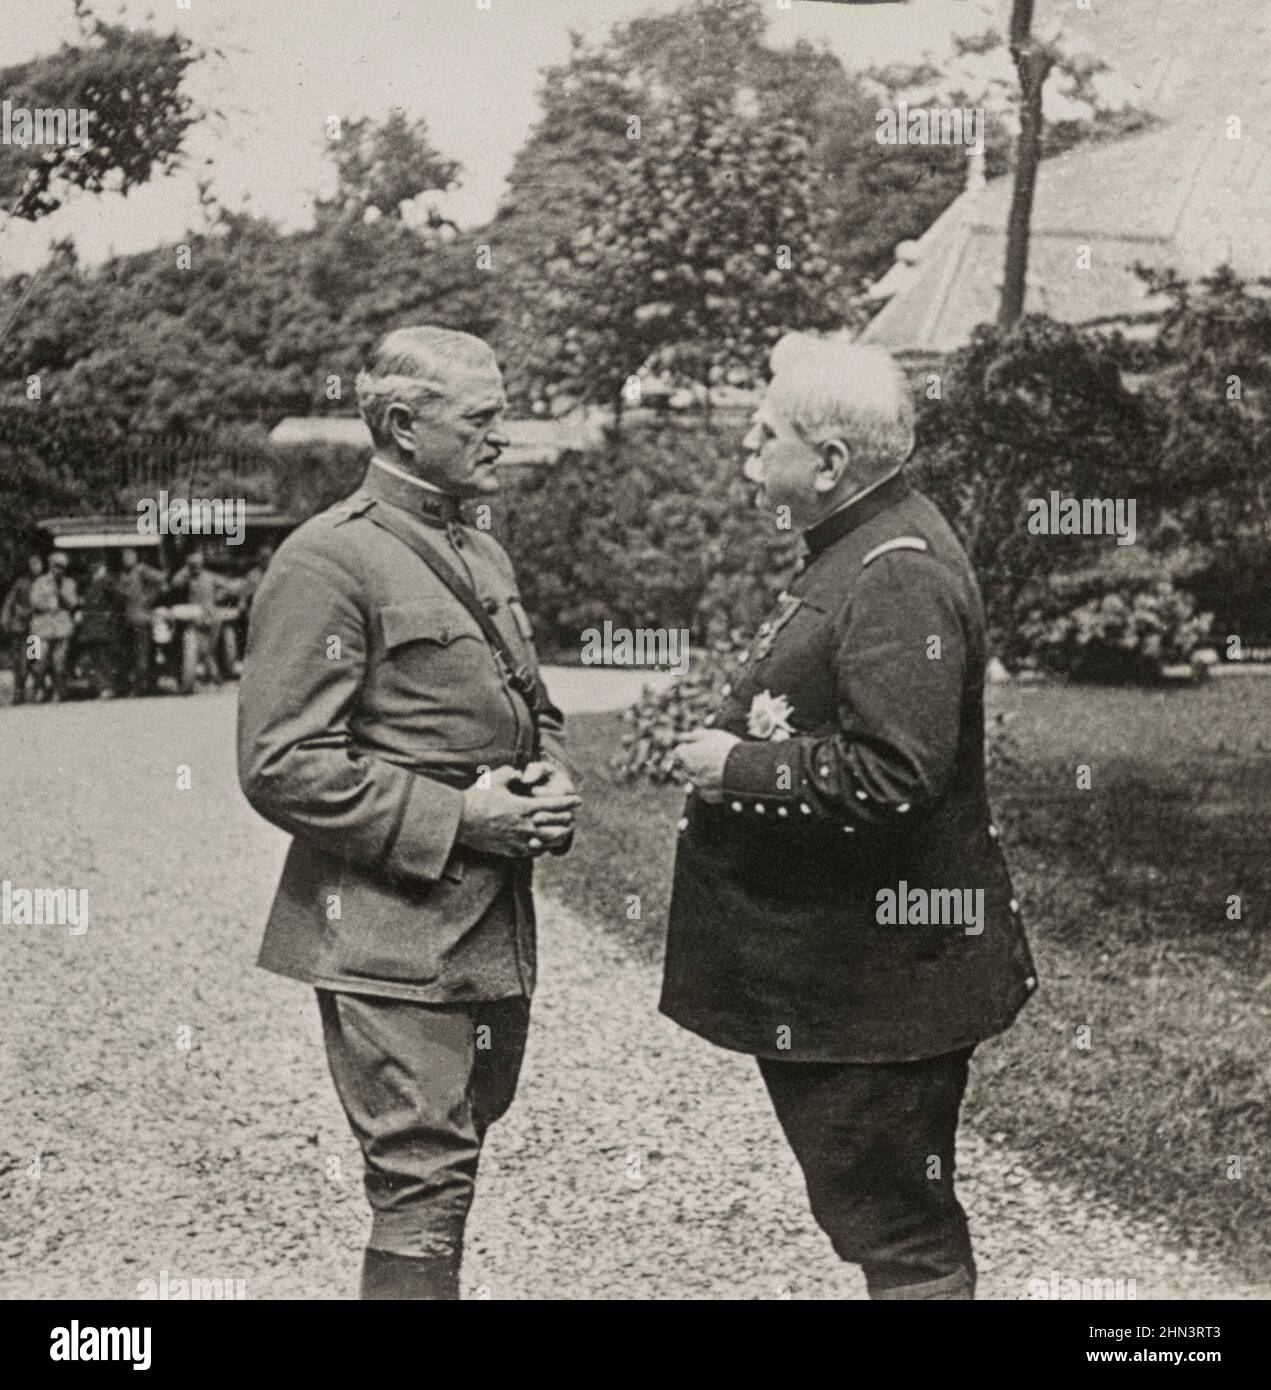 Photo d'époque du maréchal de France Joseph Joffre et du général de division John J. Pershing dans les jardins du gouverneur. Paris, France. 1918 Banque D'Images